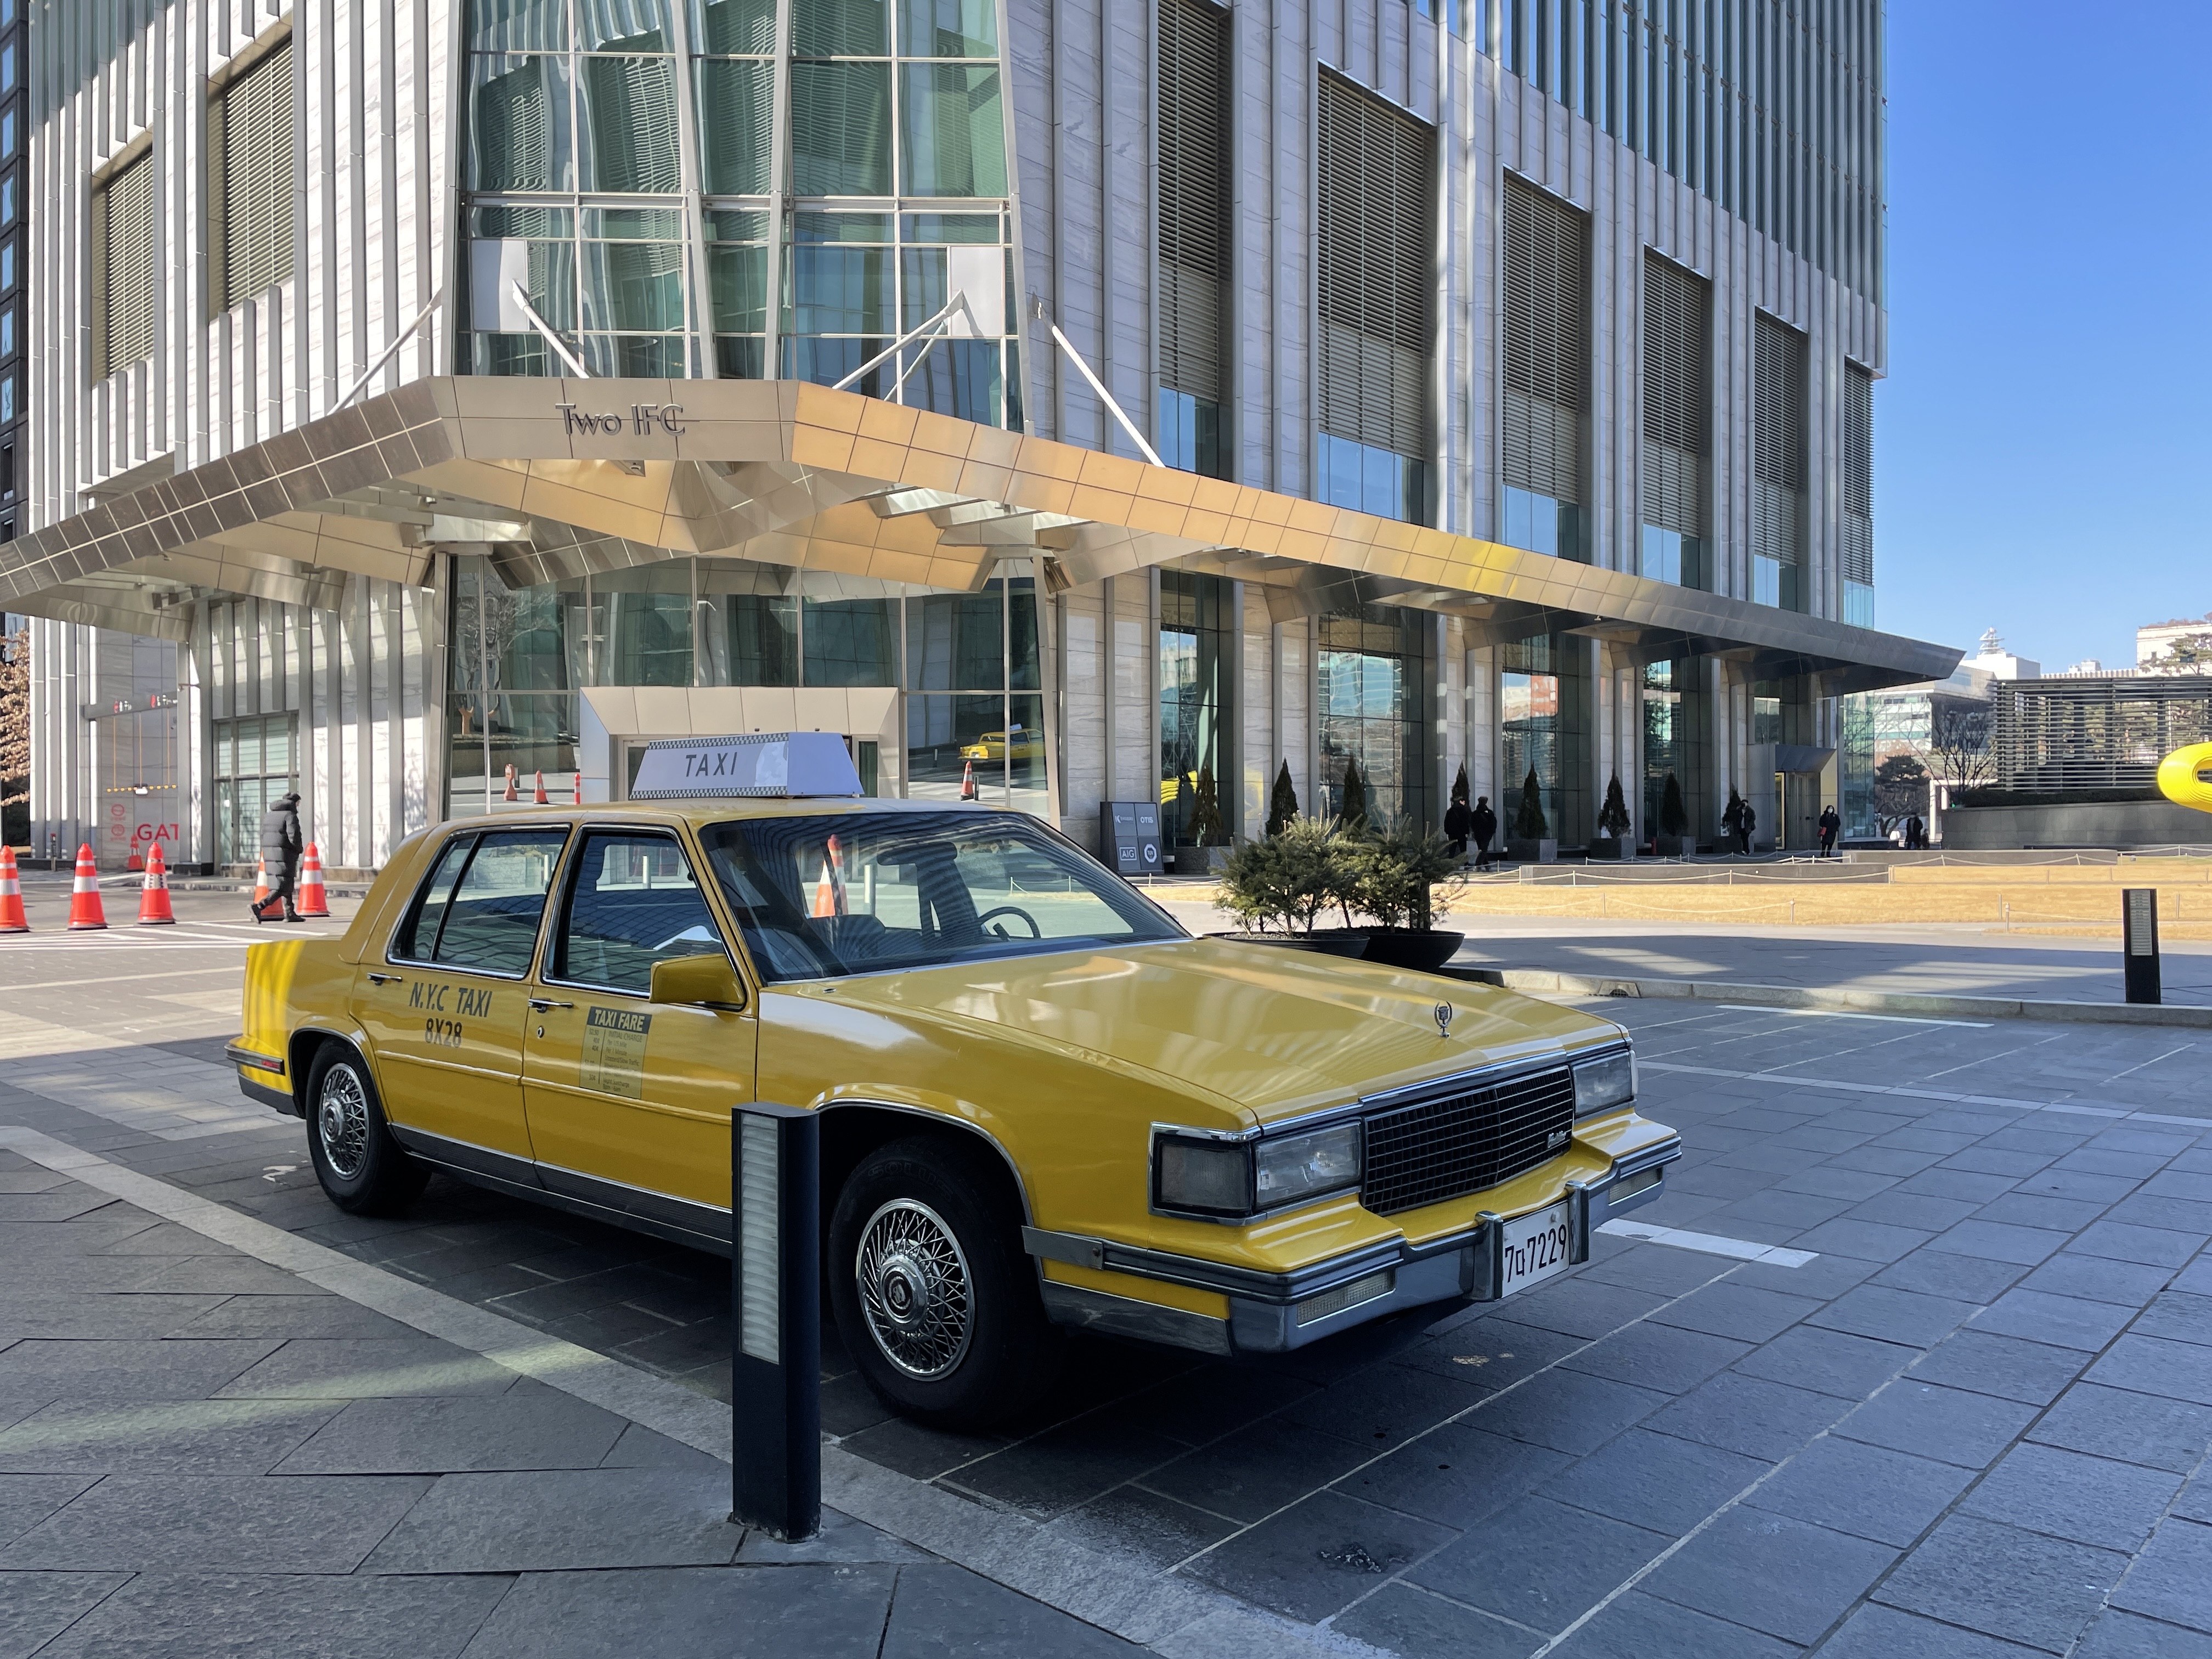 1986 cadillac fleetwood (newyork taxi)